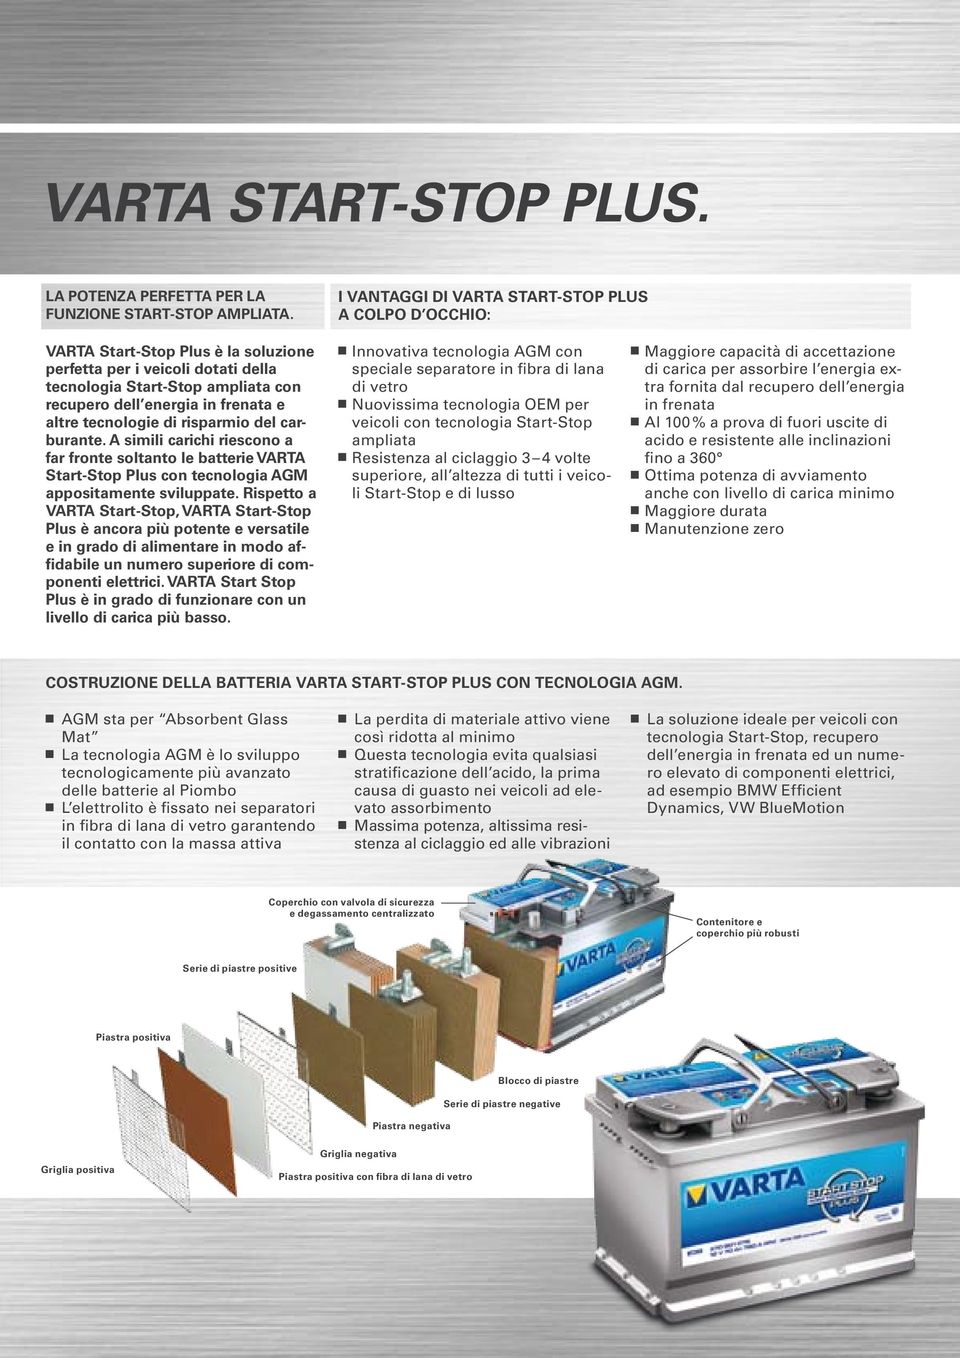 altre tecnologie di risparmio del carburante. A simili carichi riescono a far fronte soltanto le batterie VARTA Start-Stop Plus con tecnologia AGM appositamente sviluppate.